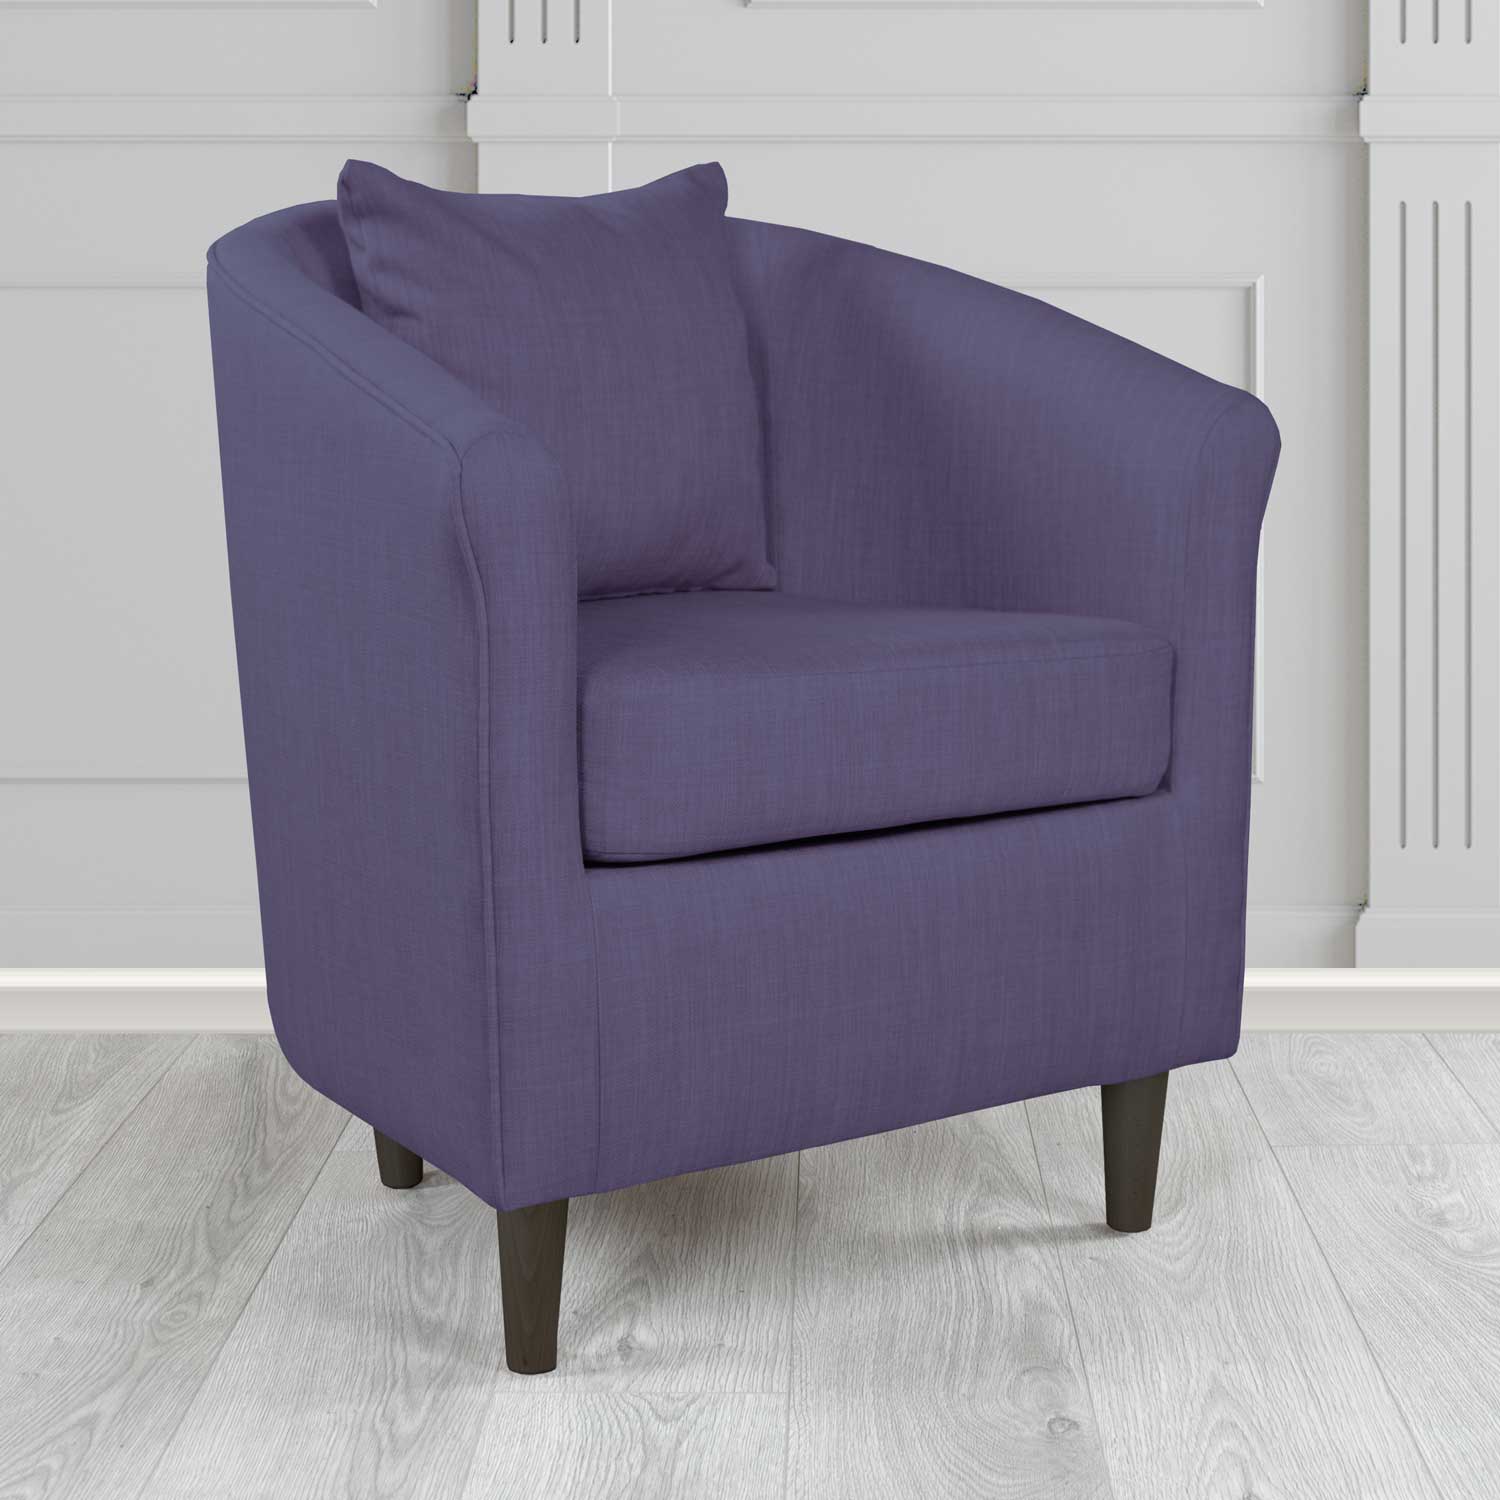 St Tropez Charles Purple Plain Linen Fabric Tub Chair - The Tub Chair Shop